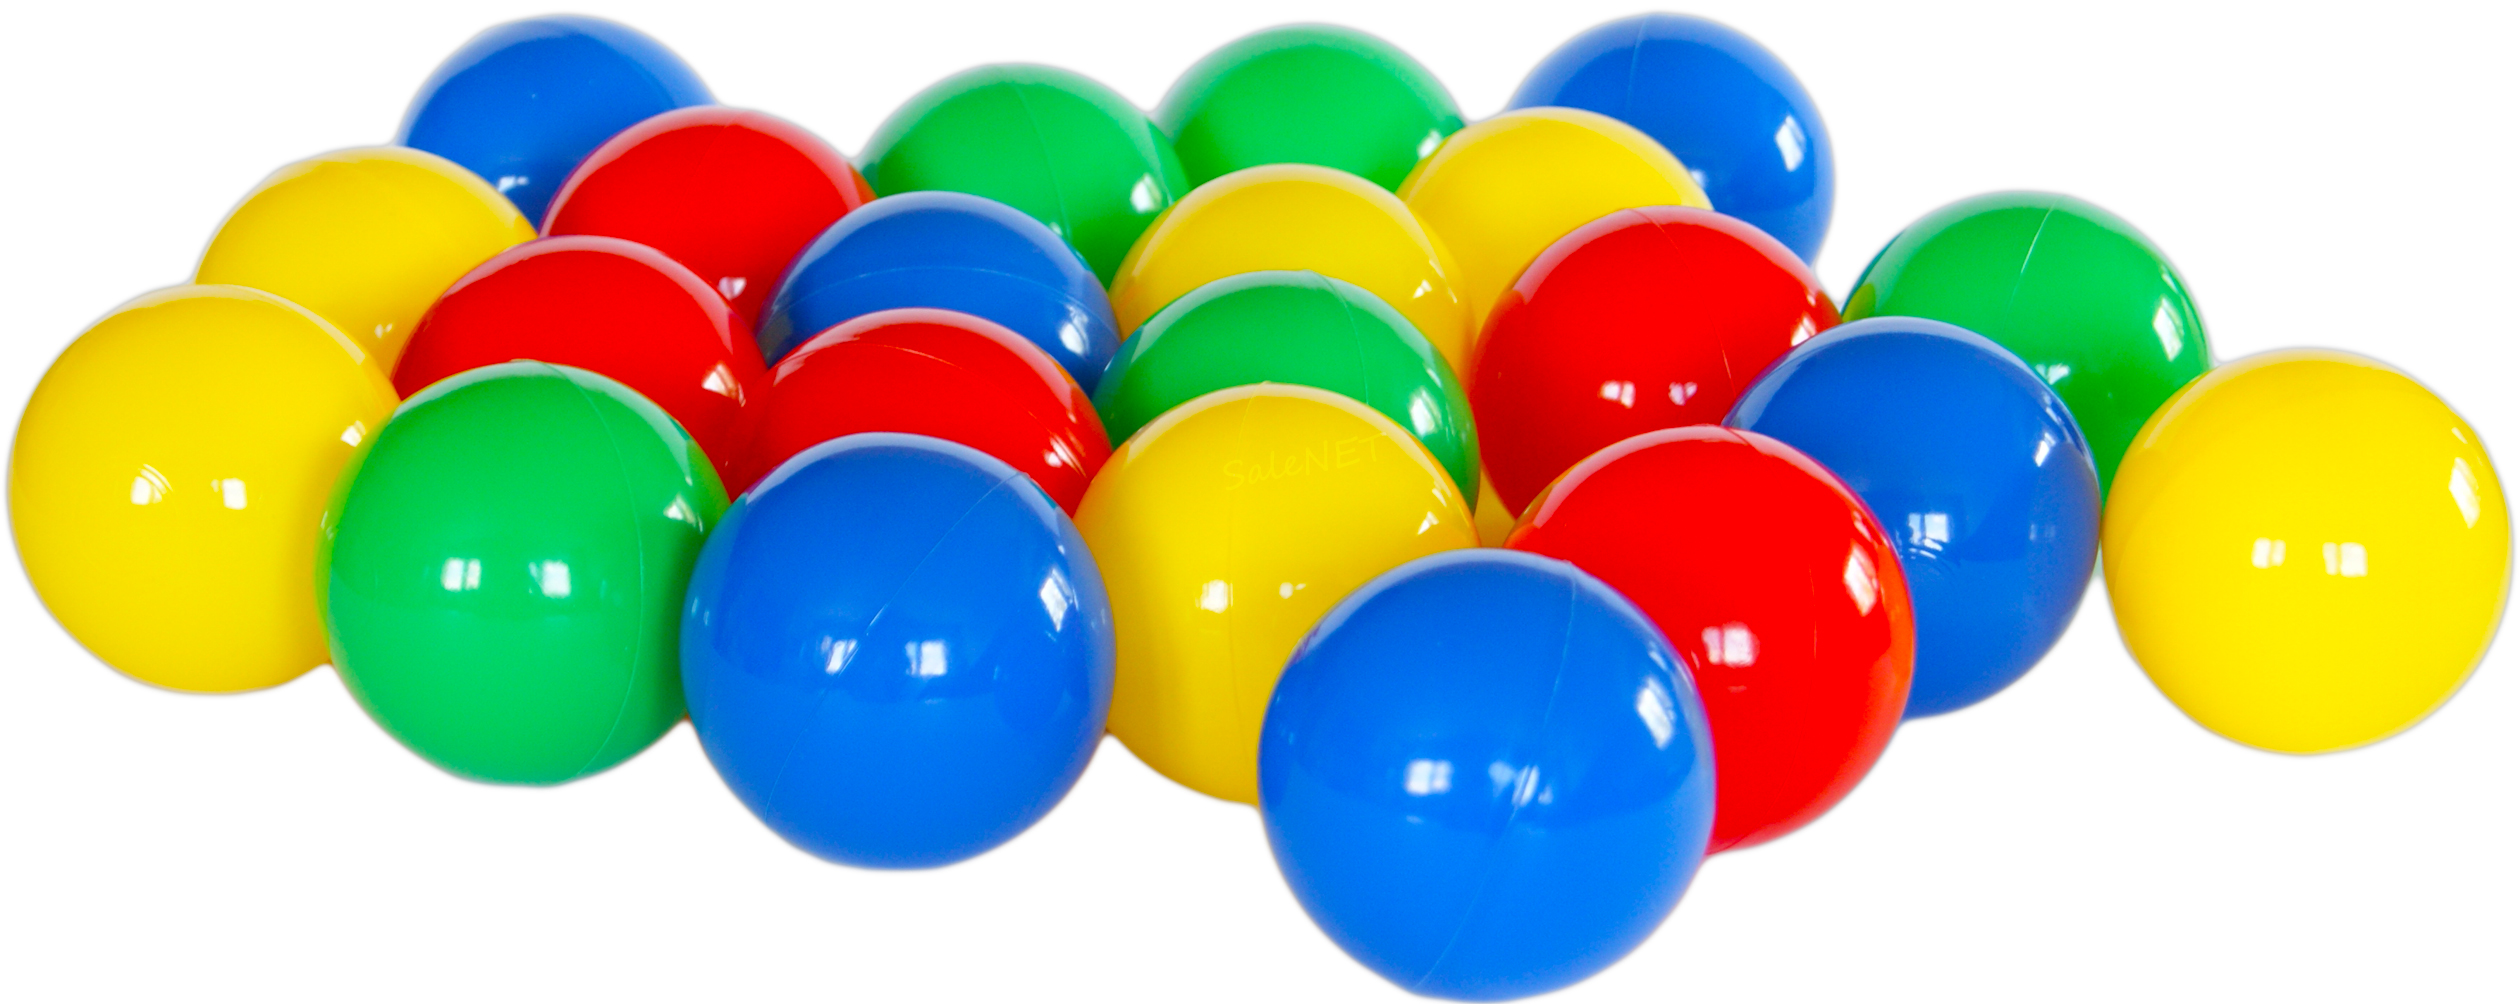 Игра круглые шарики. Пластмассовые шарики. Разноцветные мячики. Мячи для детского сада. Пластмассовые разноцветные шарики.